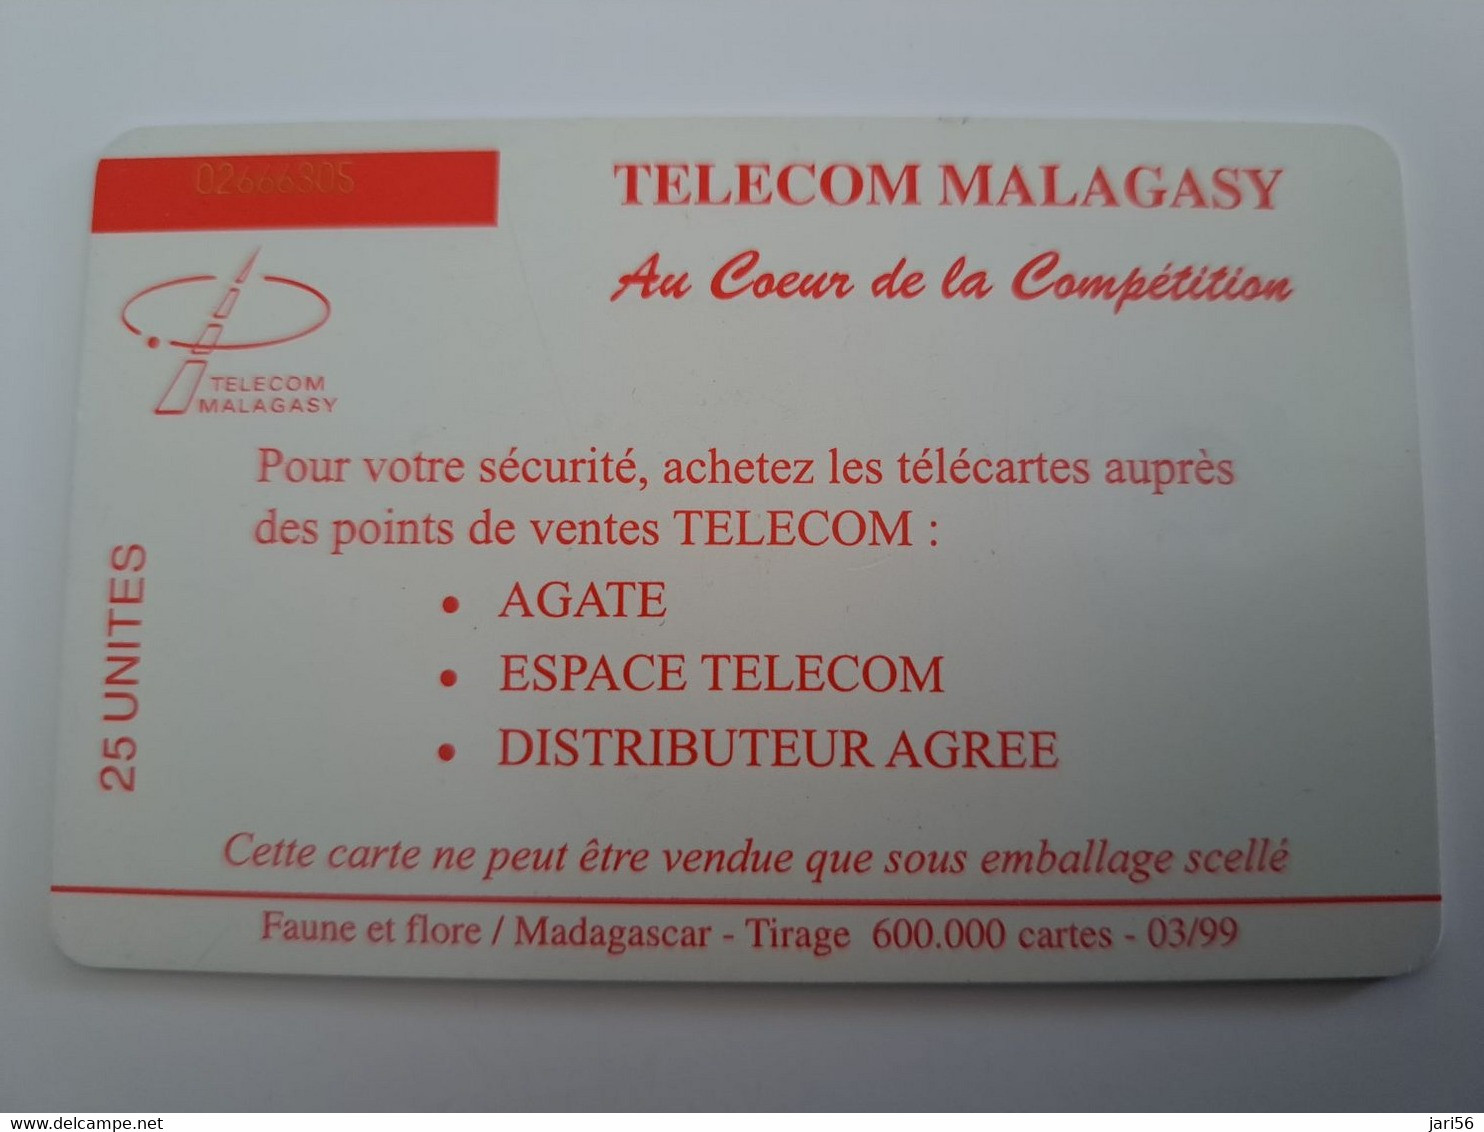 MADAGASCAR/MALAGACY CHIPCARD 25 UNITS / MAKI MONKEY/ FLOWERS DATE 03/99  USED CARD     ** 11920** - Madagaskar